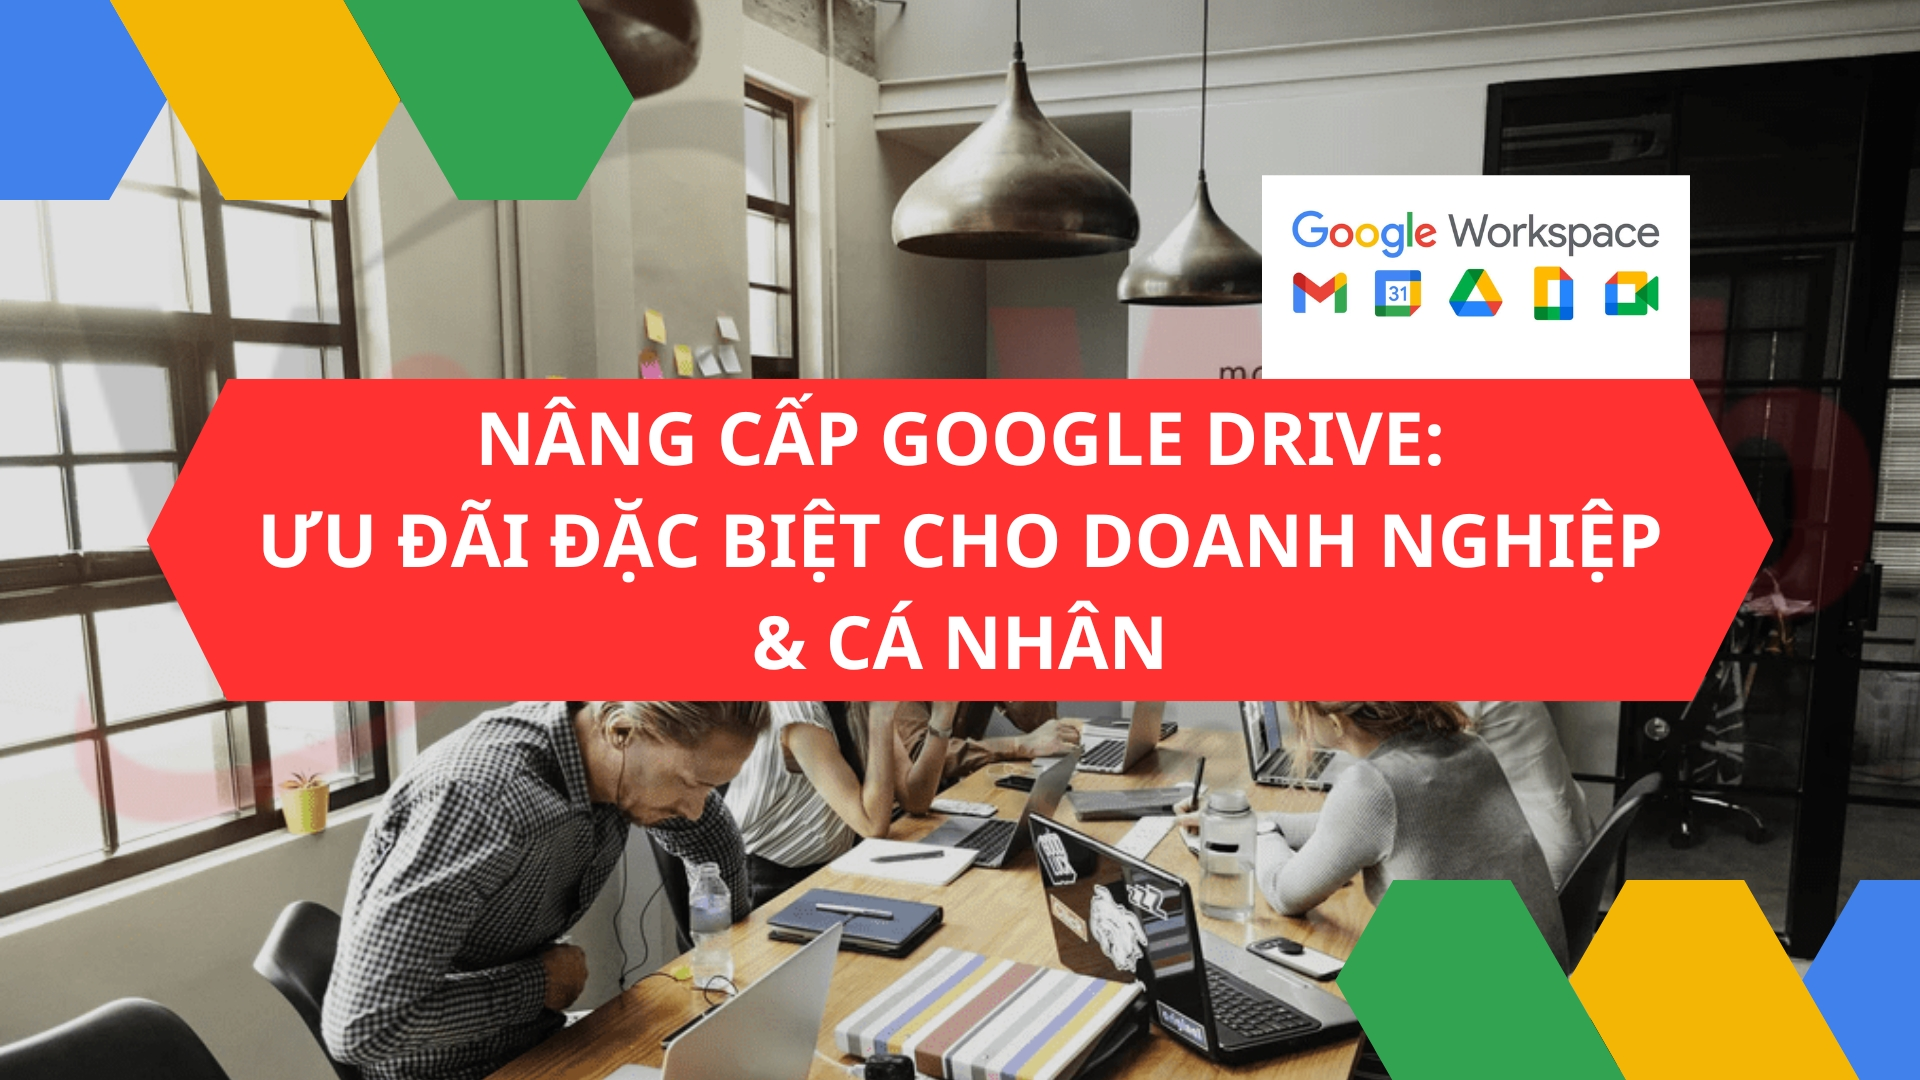 Nâng cấp tài khoản Google Drive: Ưu đãi đặc biệt cho Doanh nghiệp & Cá nhân